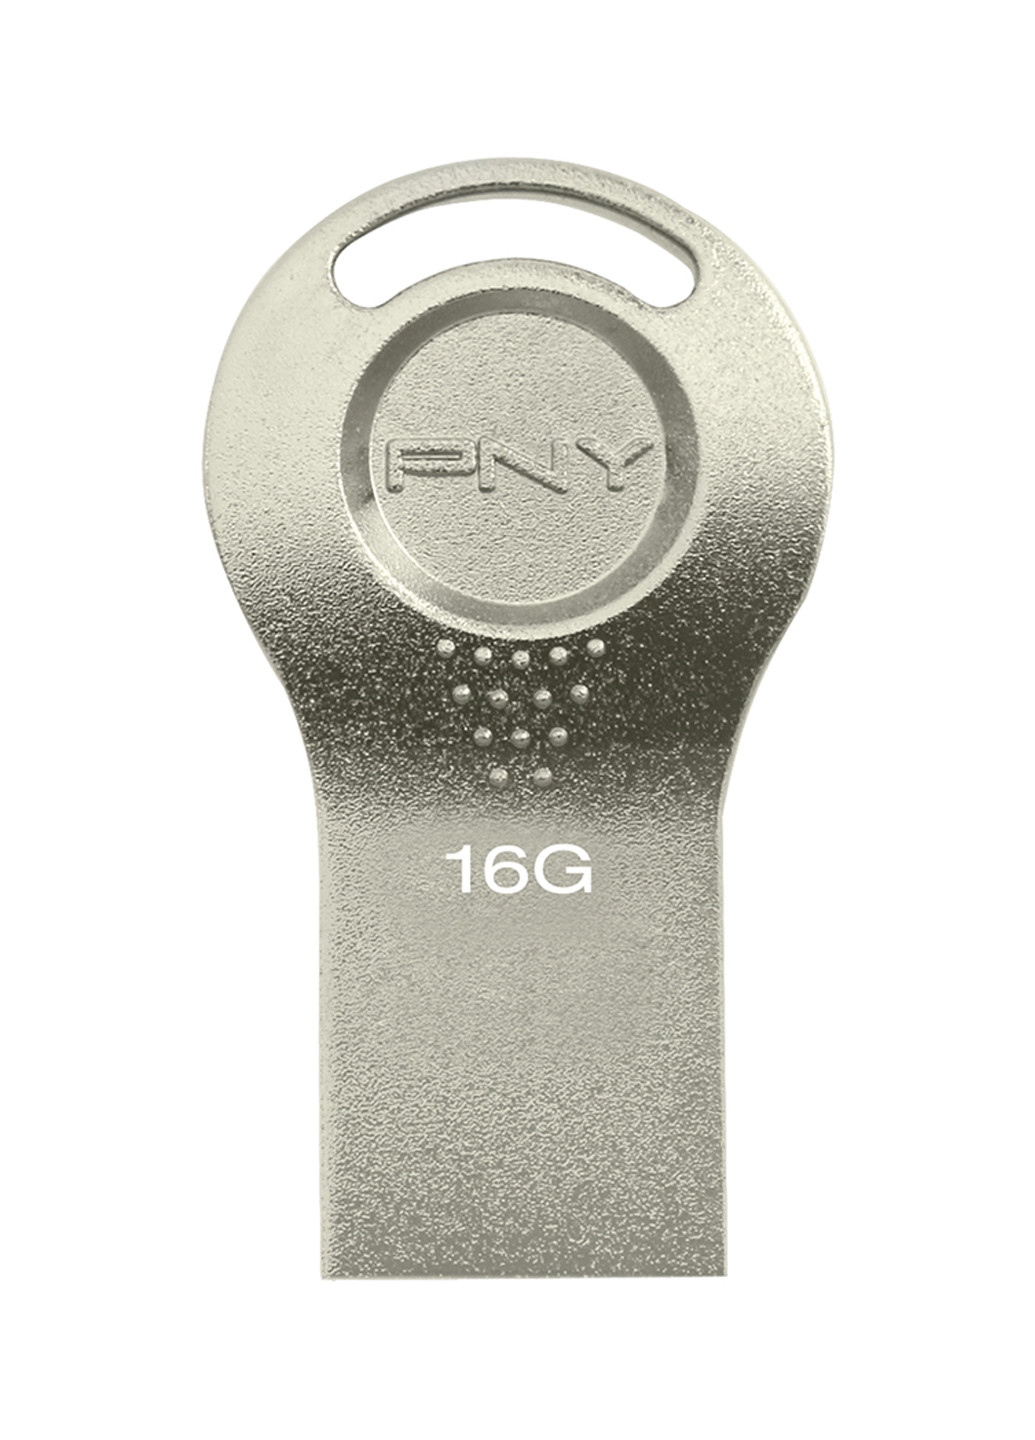 Флеш память USB Attache I 16GB Durable Metal Silver (FDI16GATTI-EF) PNY флеш память usb pny attache i 16gb durable metal silver (fdi16gatti-ef) (135526996)